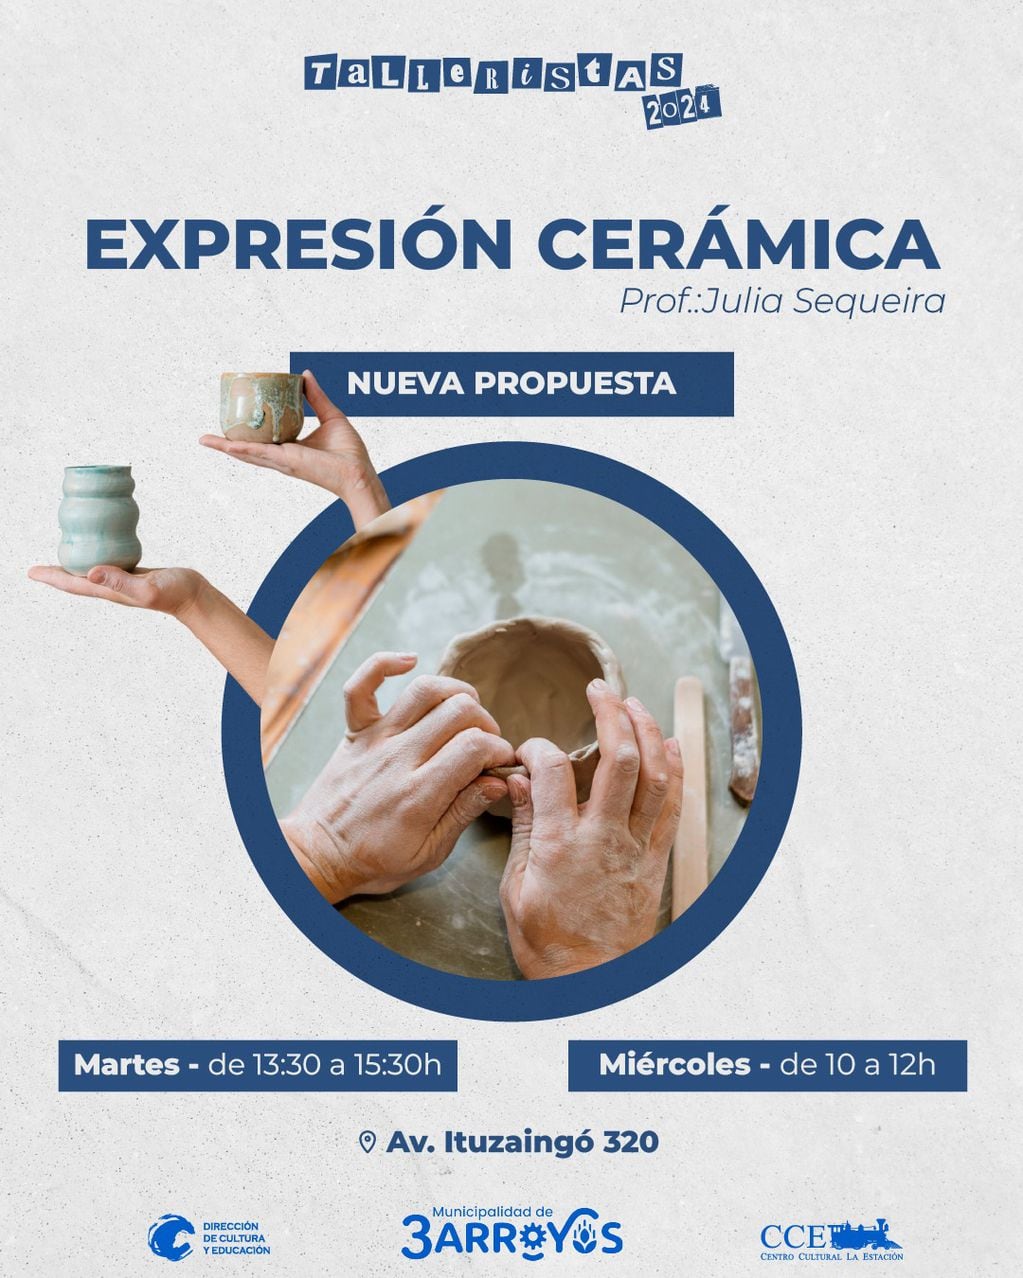 Inscripciones abiertas para el taller de cerámica en el Centro Cultural La Estación